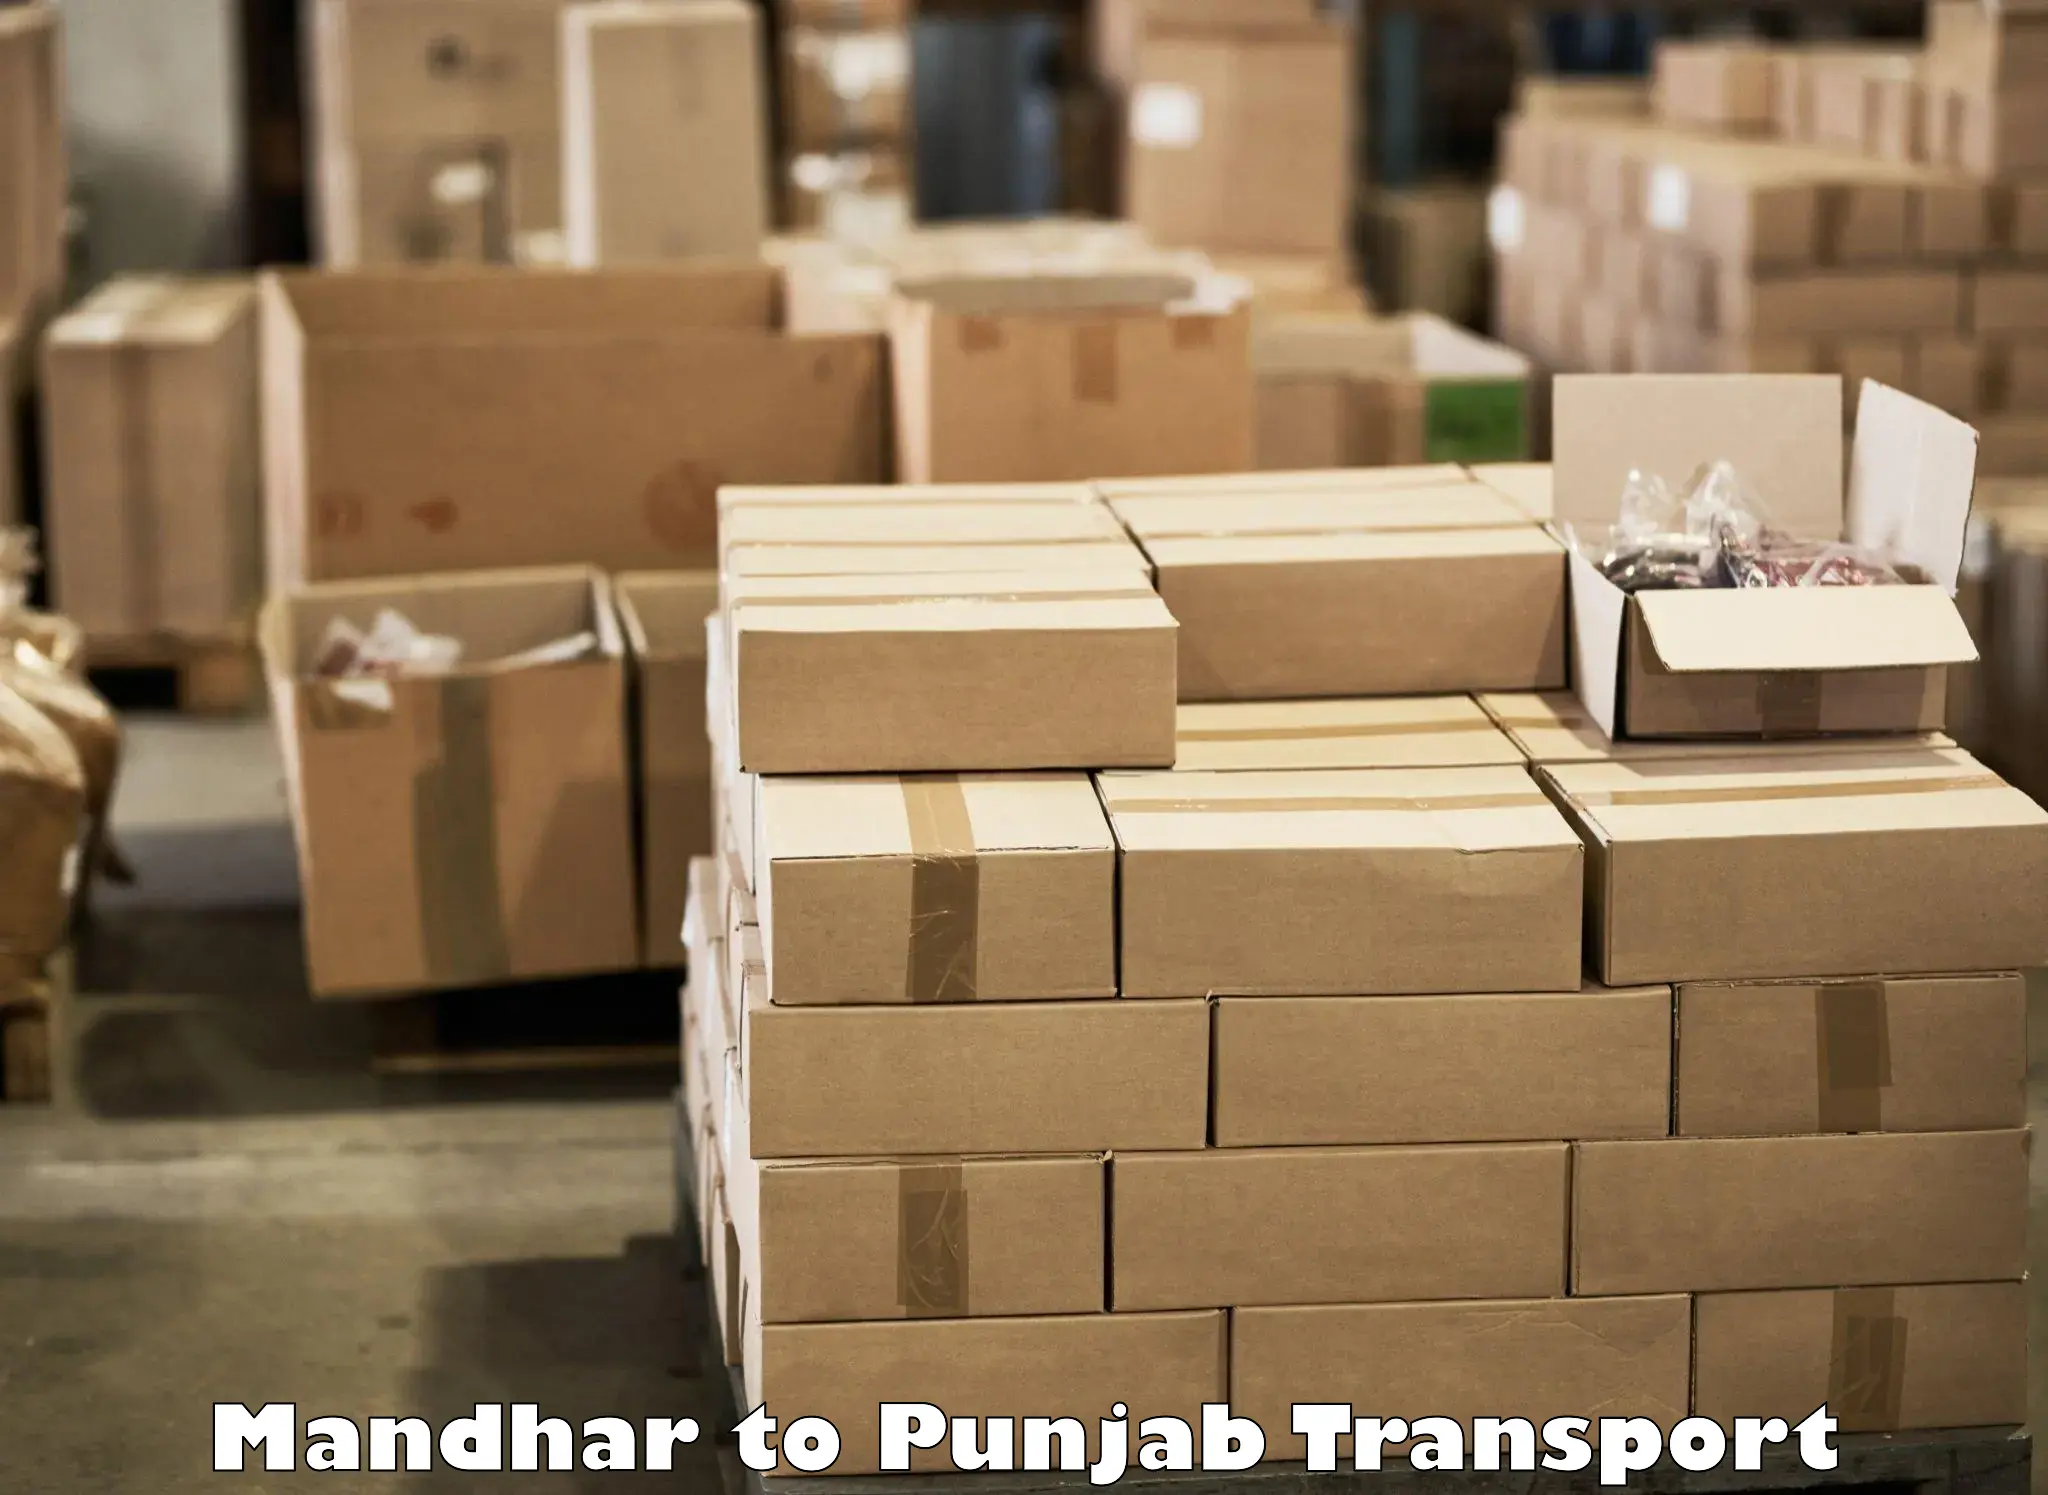 Road transport online services Mandhar to Sangrur